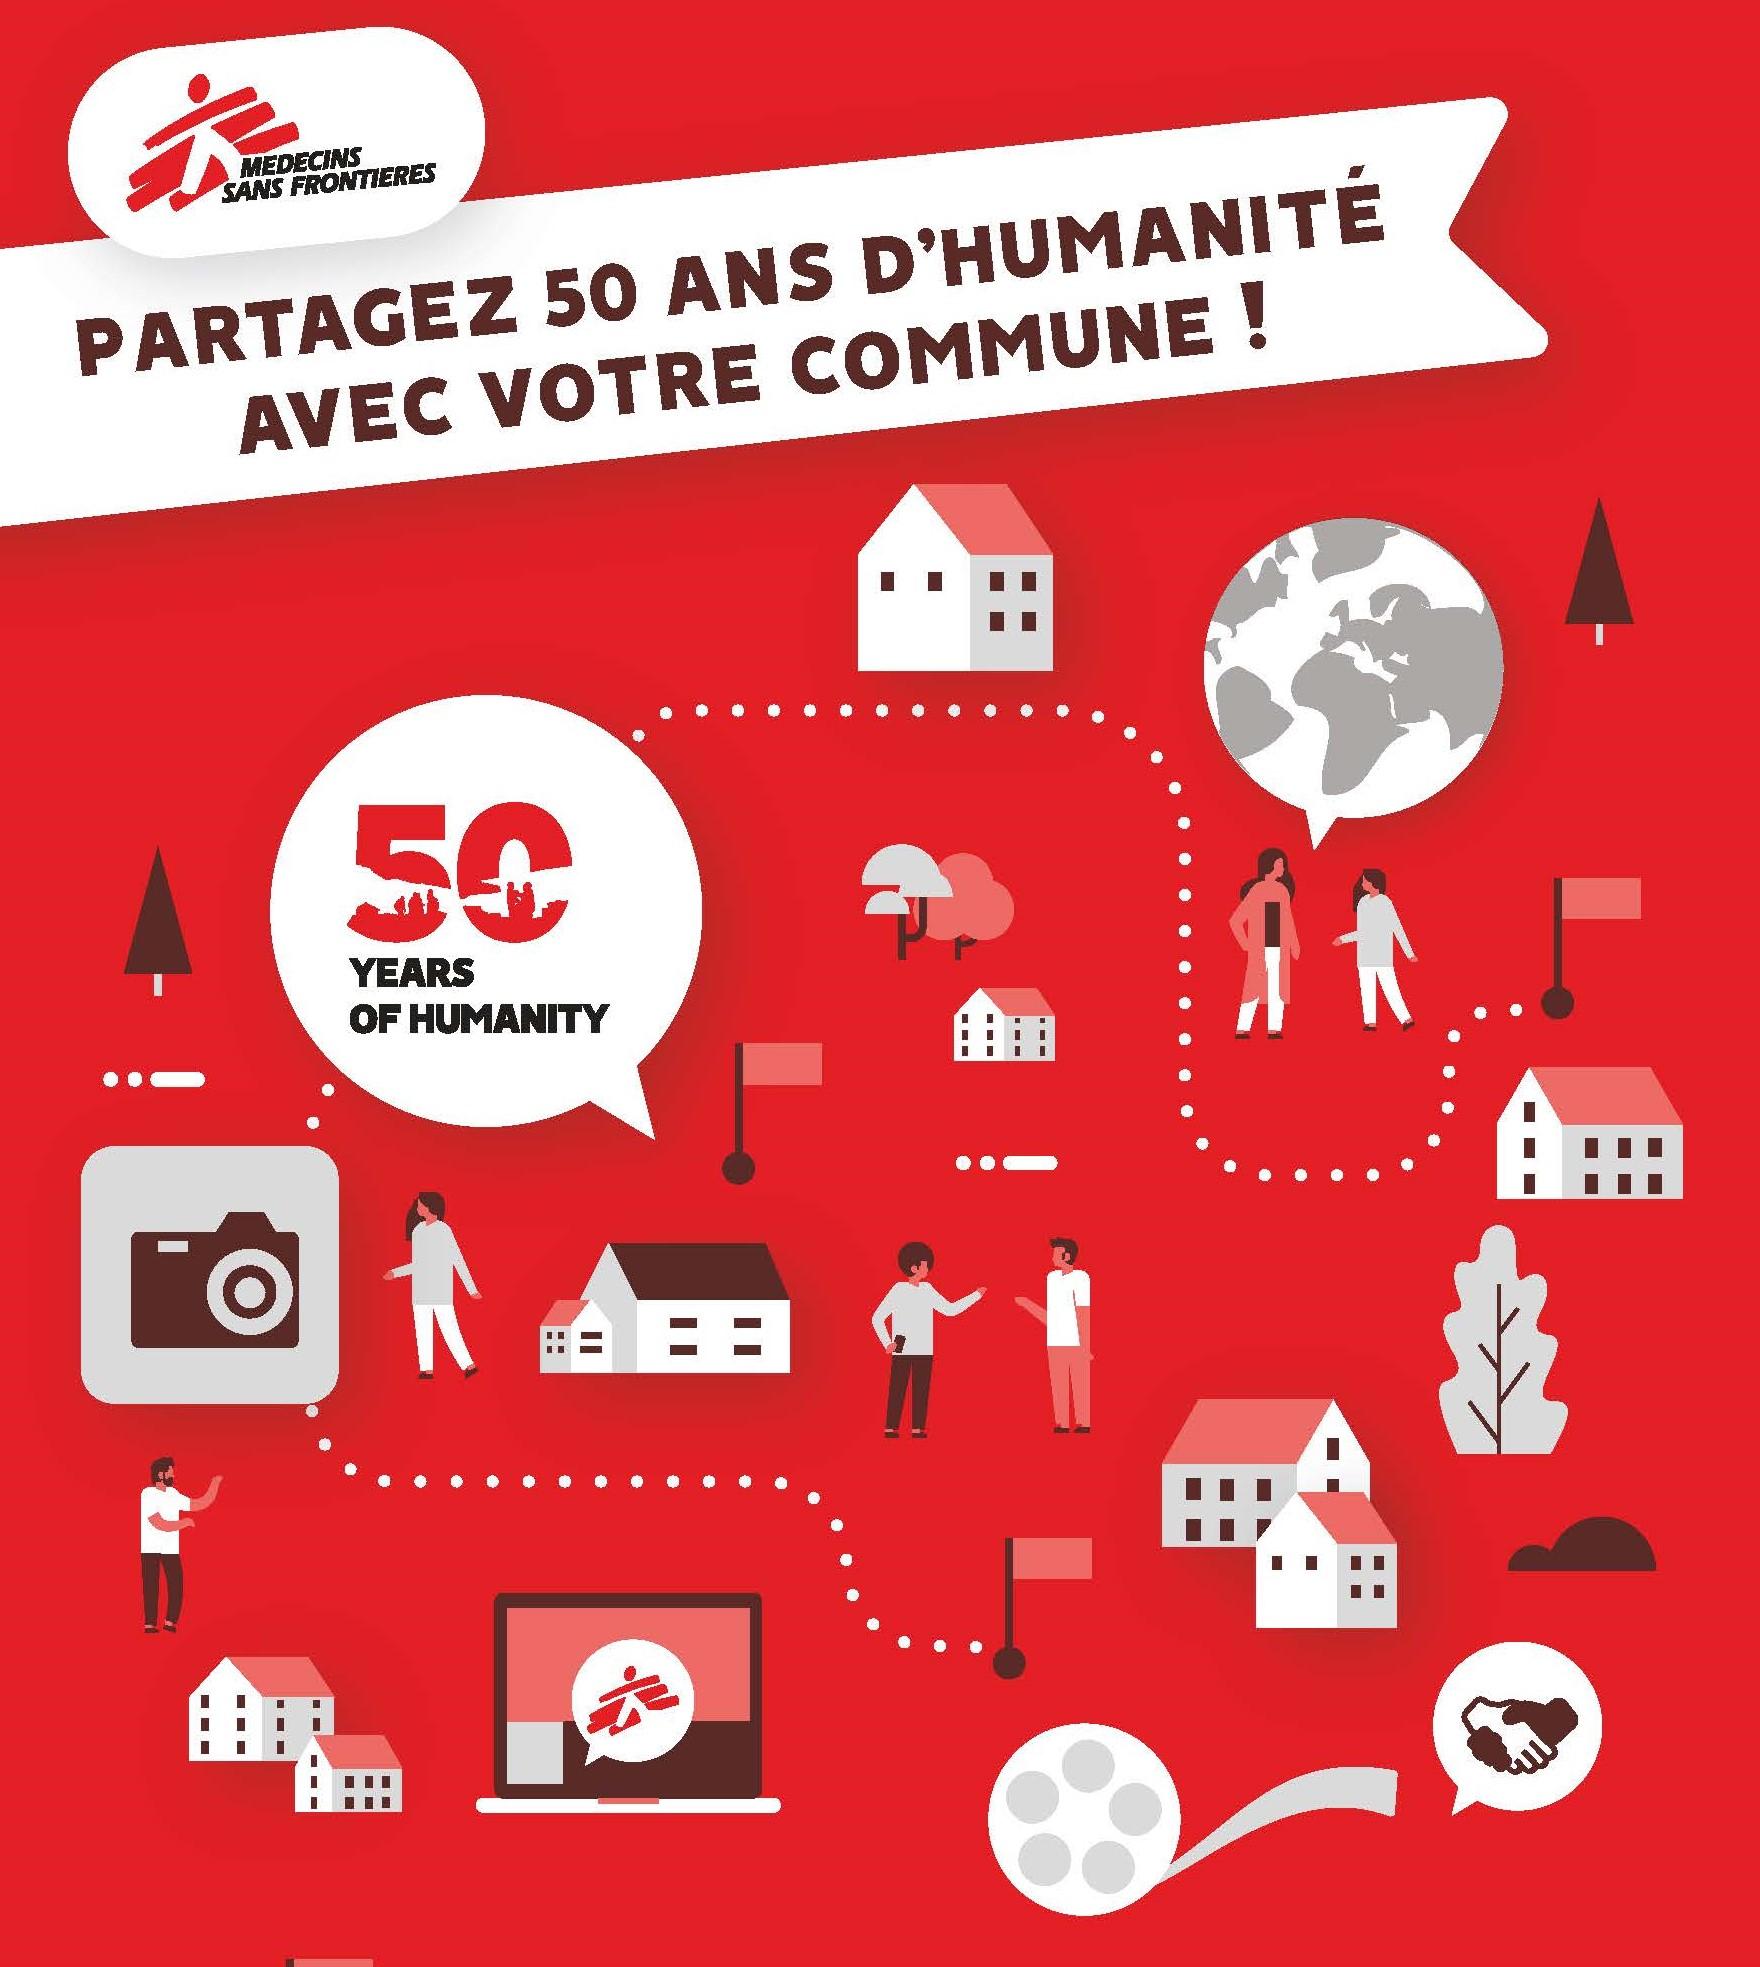 Les communes de Luxembourg célèbrent les 50 ans de MSF